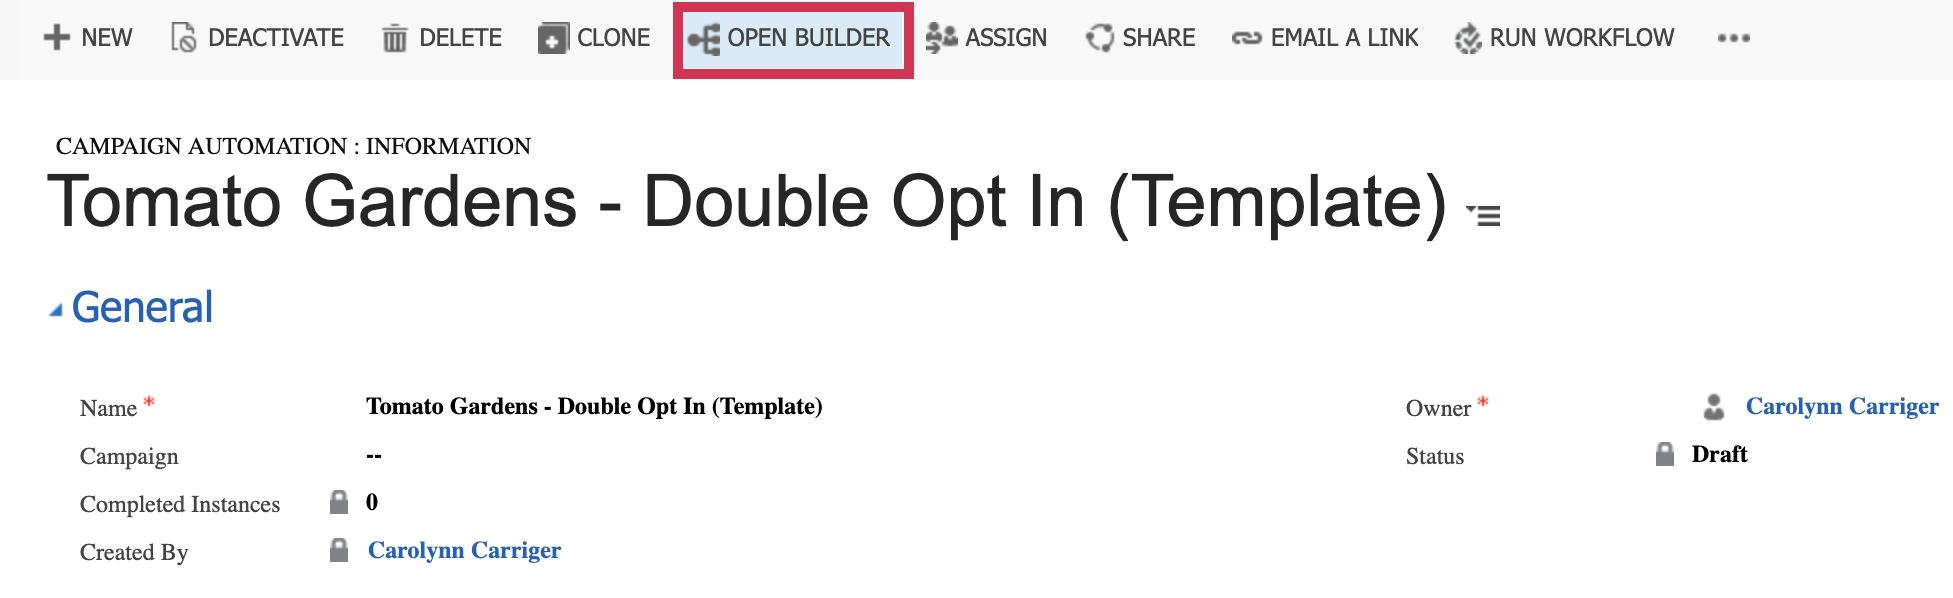 CA_open_builder.png